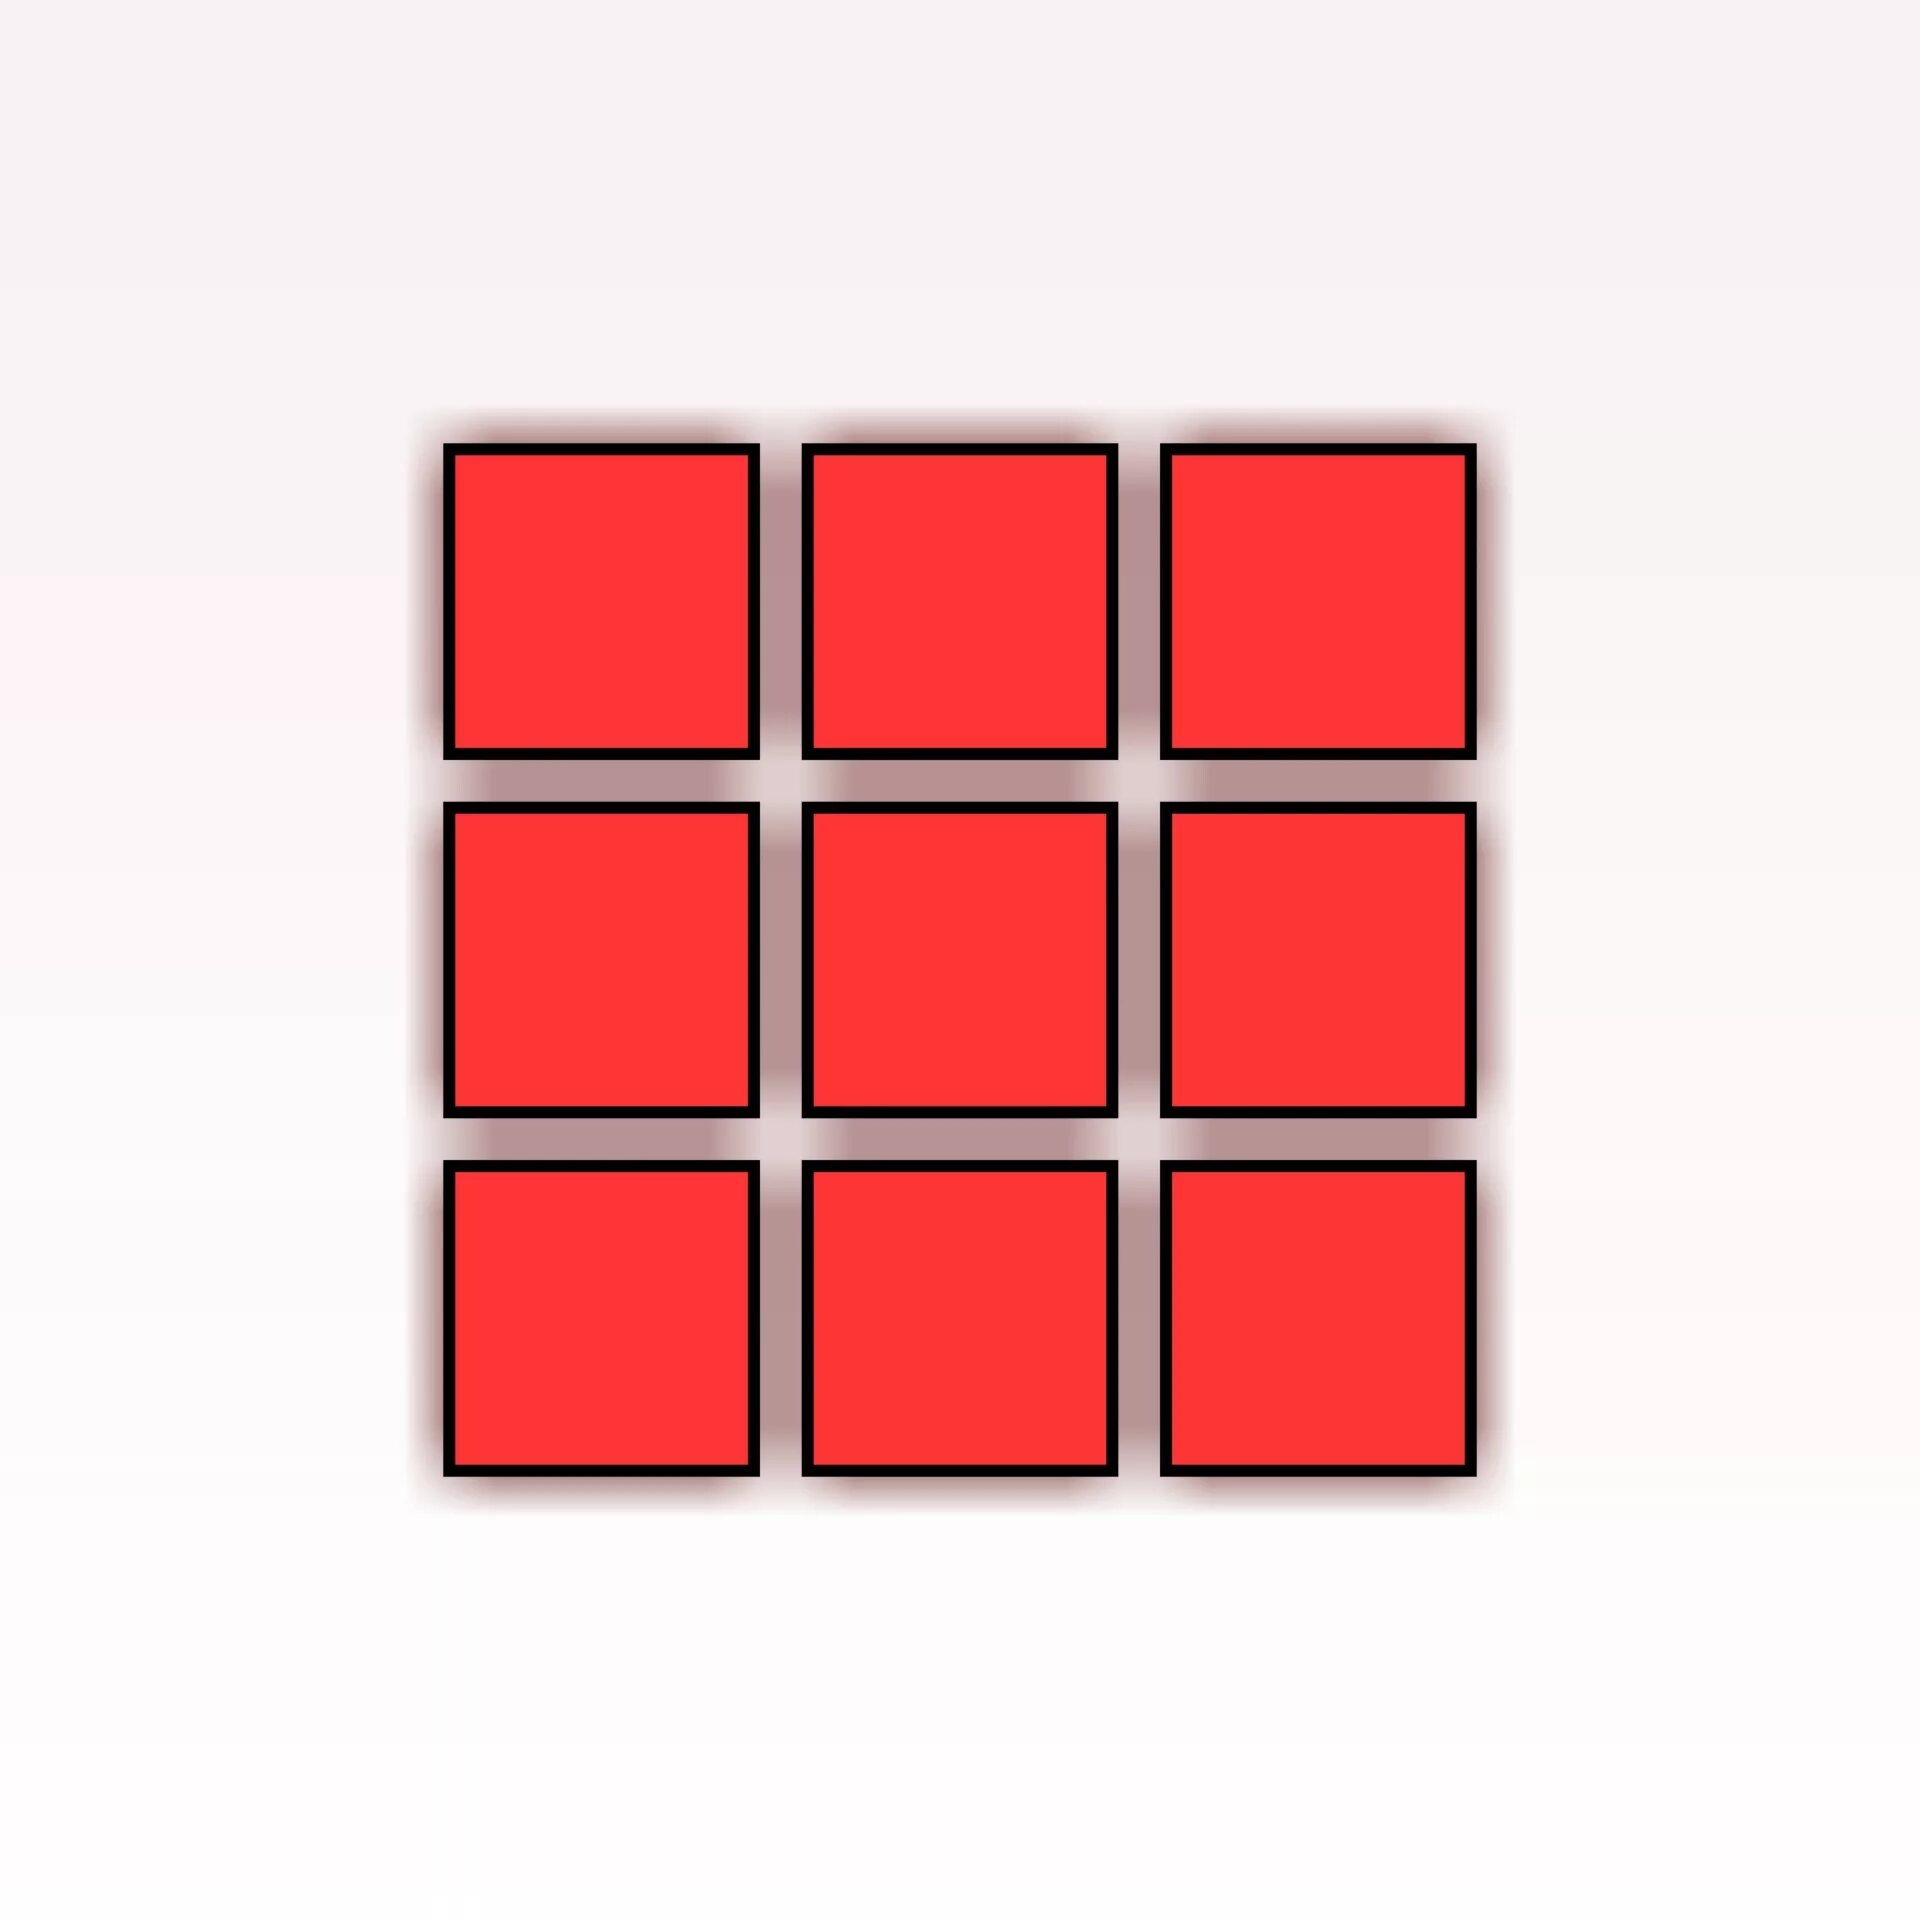 Красный квадрат. Красный квадратик. Квадраты раздаточный материал. Красный квадрат на белом фоне.